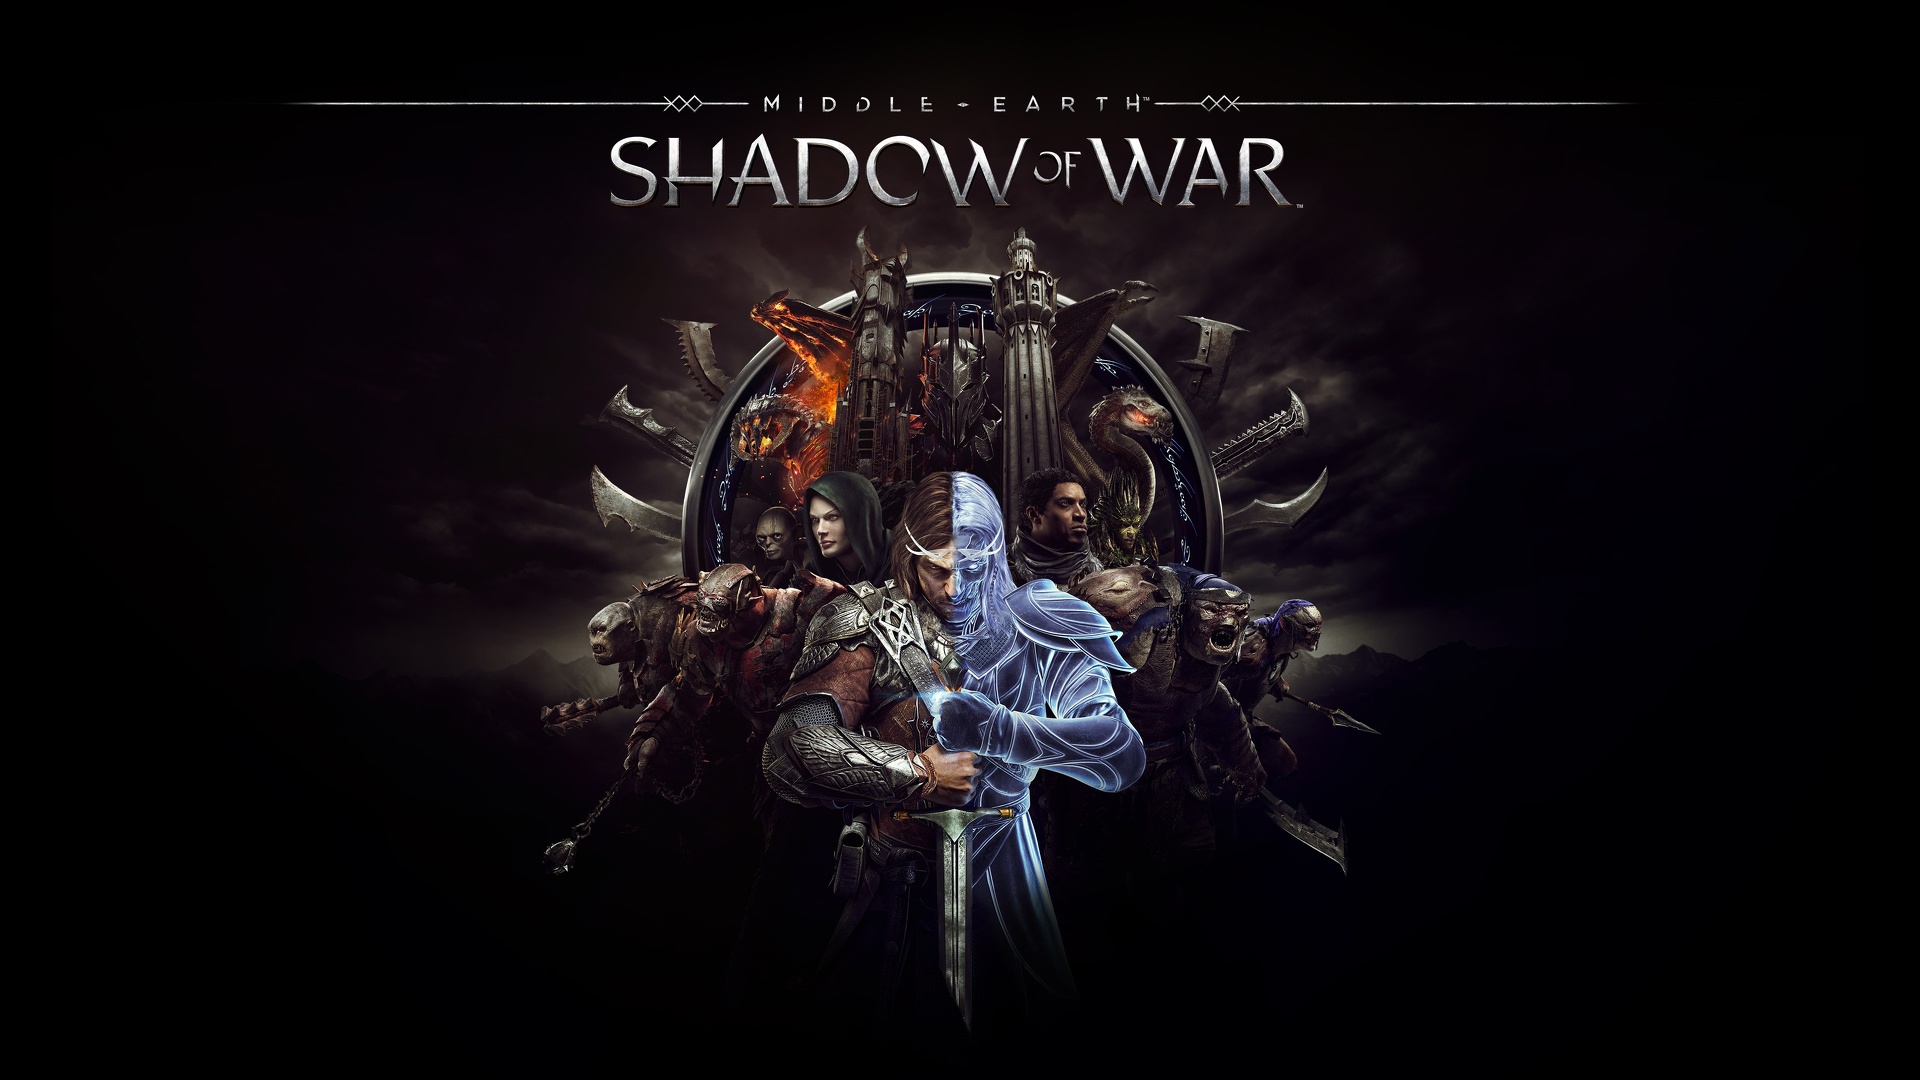 Shadow of War - Middle Earth.jpg